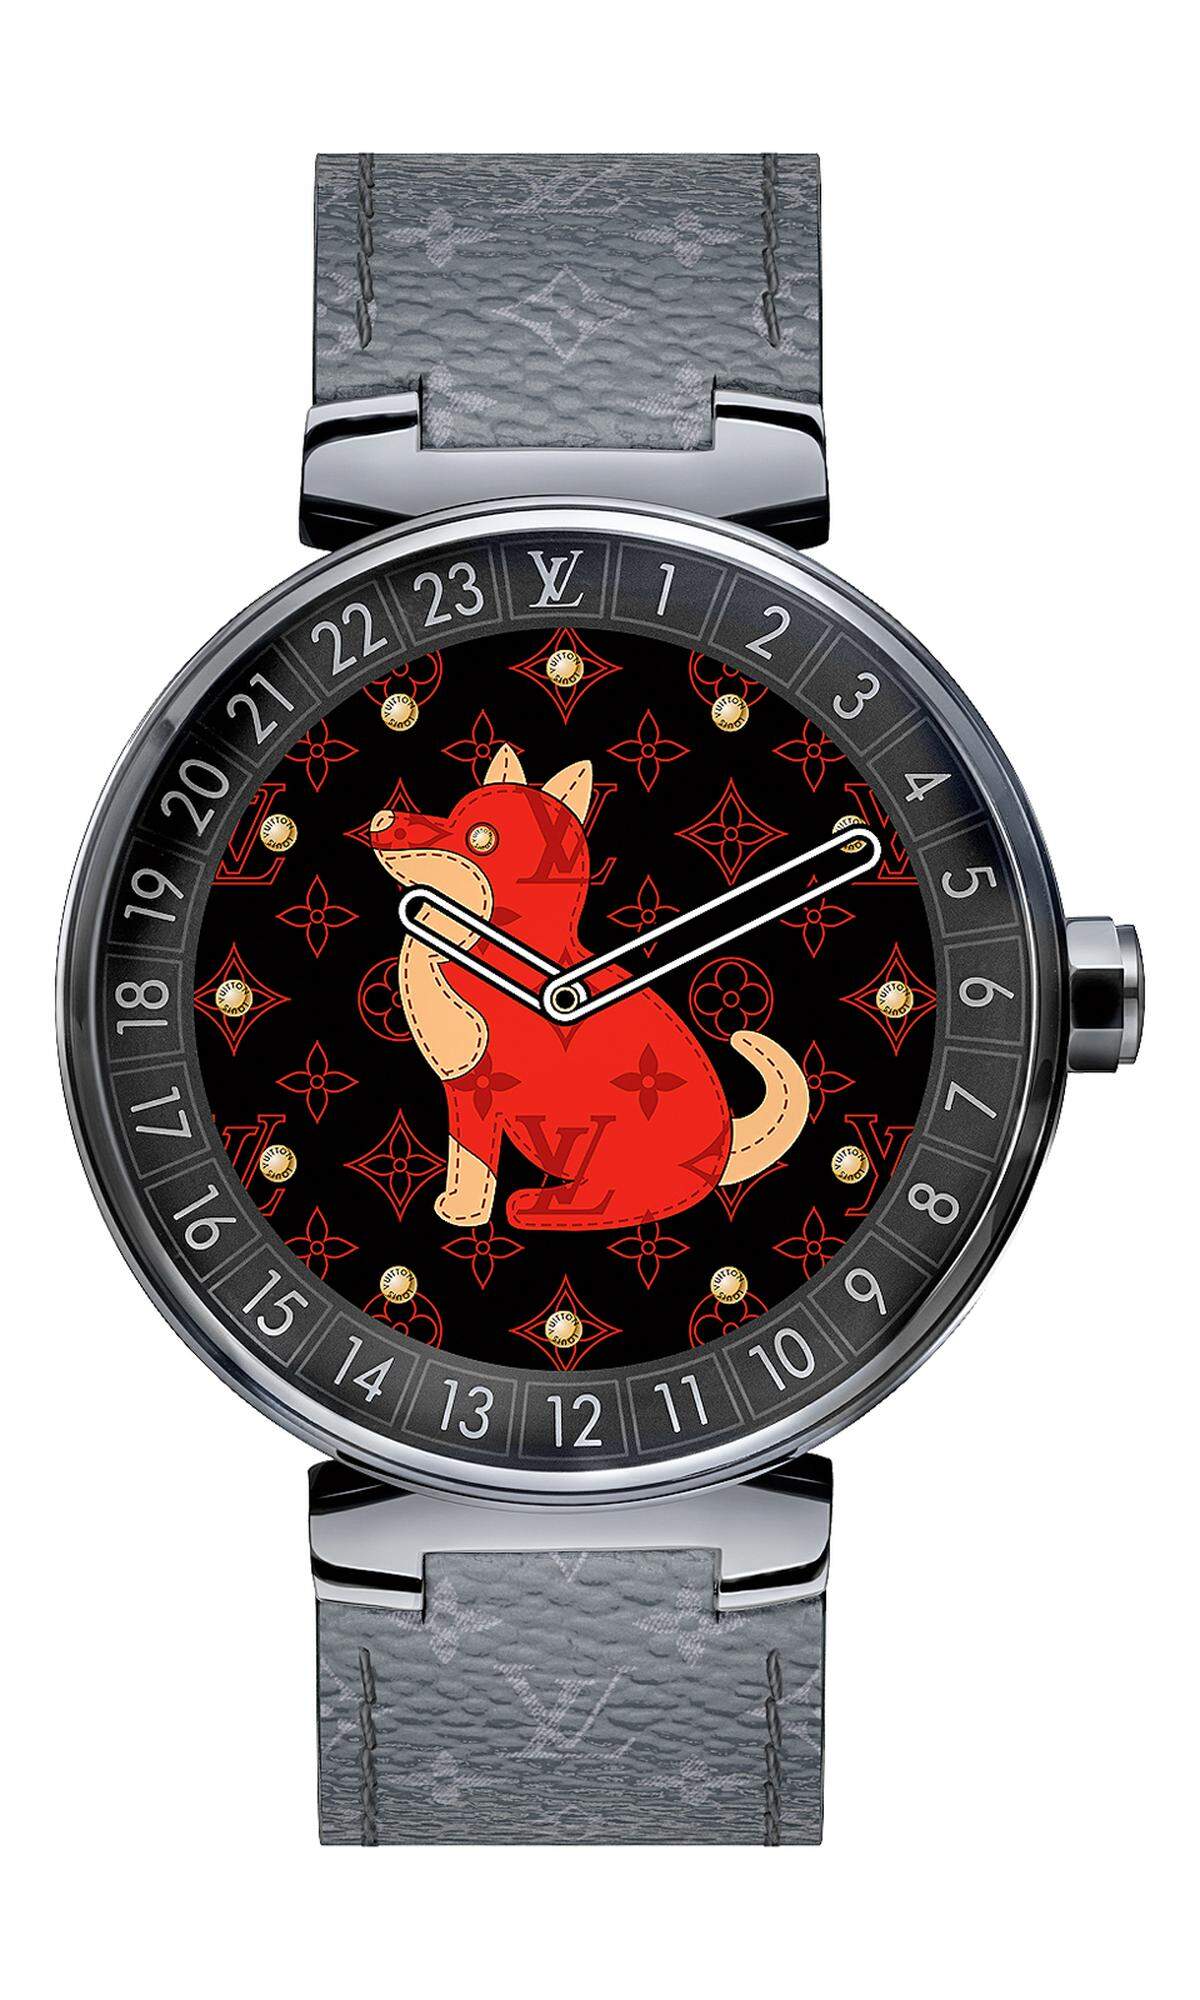 Louis Vuitton, „Tambour Horizon“: Zur Feier des chinesischen Neujahrs bringt Louis Vuitton eine neue Variante seiner Smartwatch „Tambour Horizon“ auf den Markt. Alle zwölf chinesischen Tierkreiszeichen sind auf dem digitalen Zifferblatt abrufbar.  